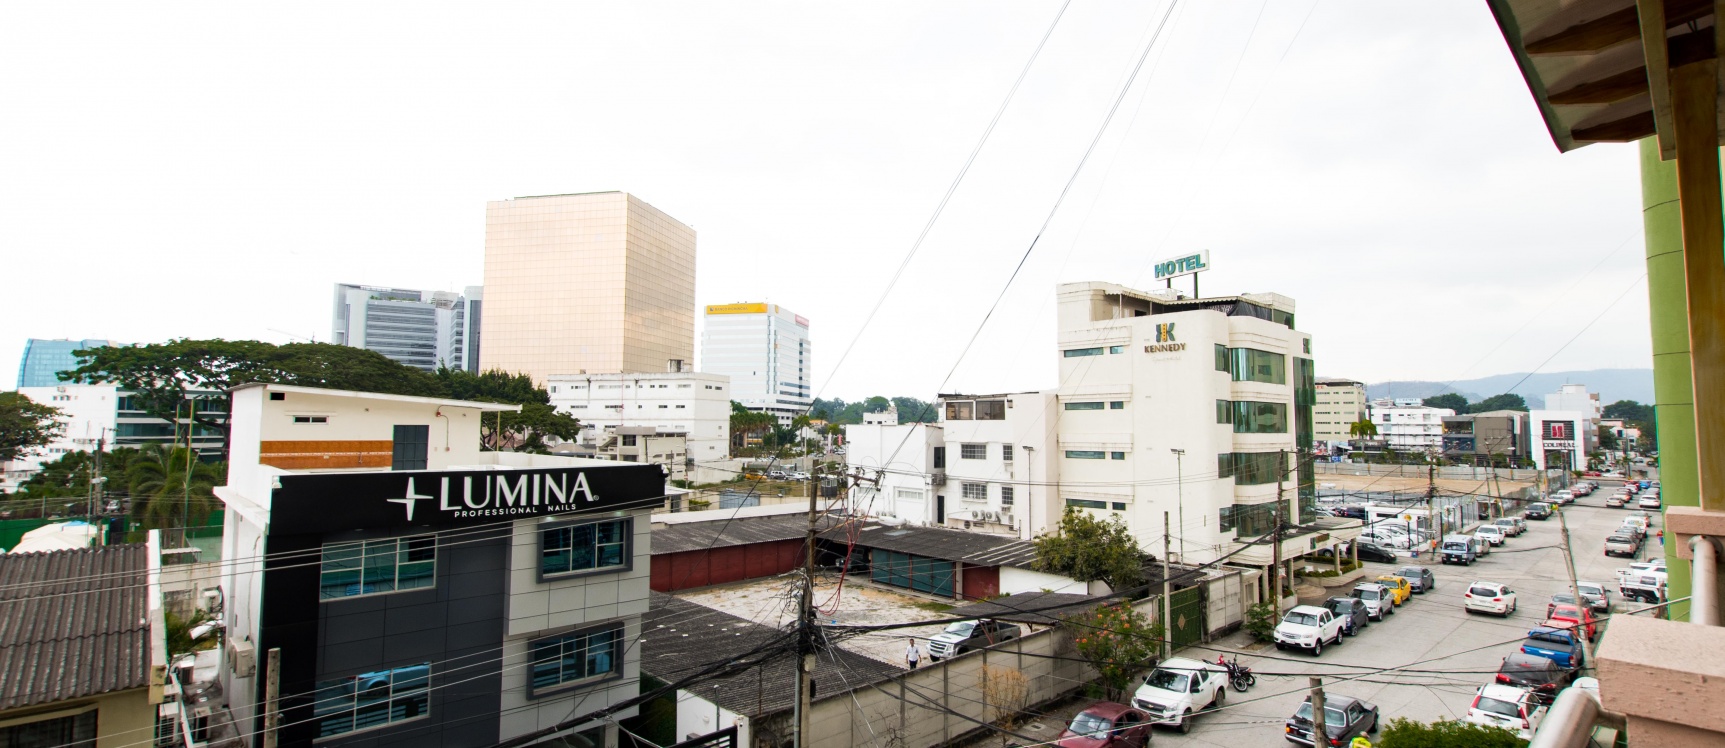 GeoBienes - Moderno Penthouse de dos pisos en alquiler ubicado en Kennedy Norte - Plusvalia Guayaquil Casas de venta y alquiler Inmobiliaria Ecuador